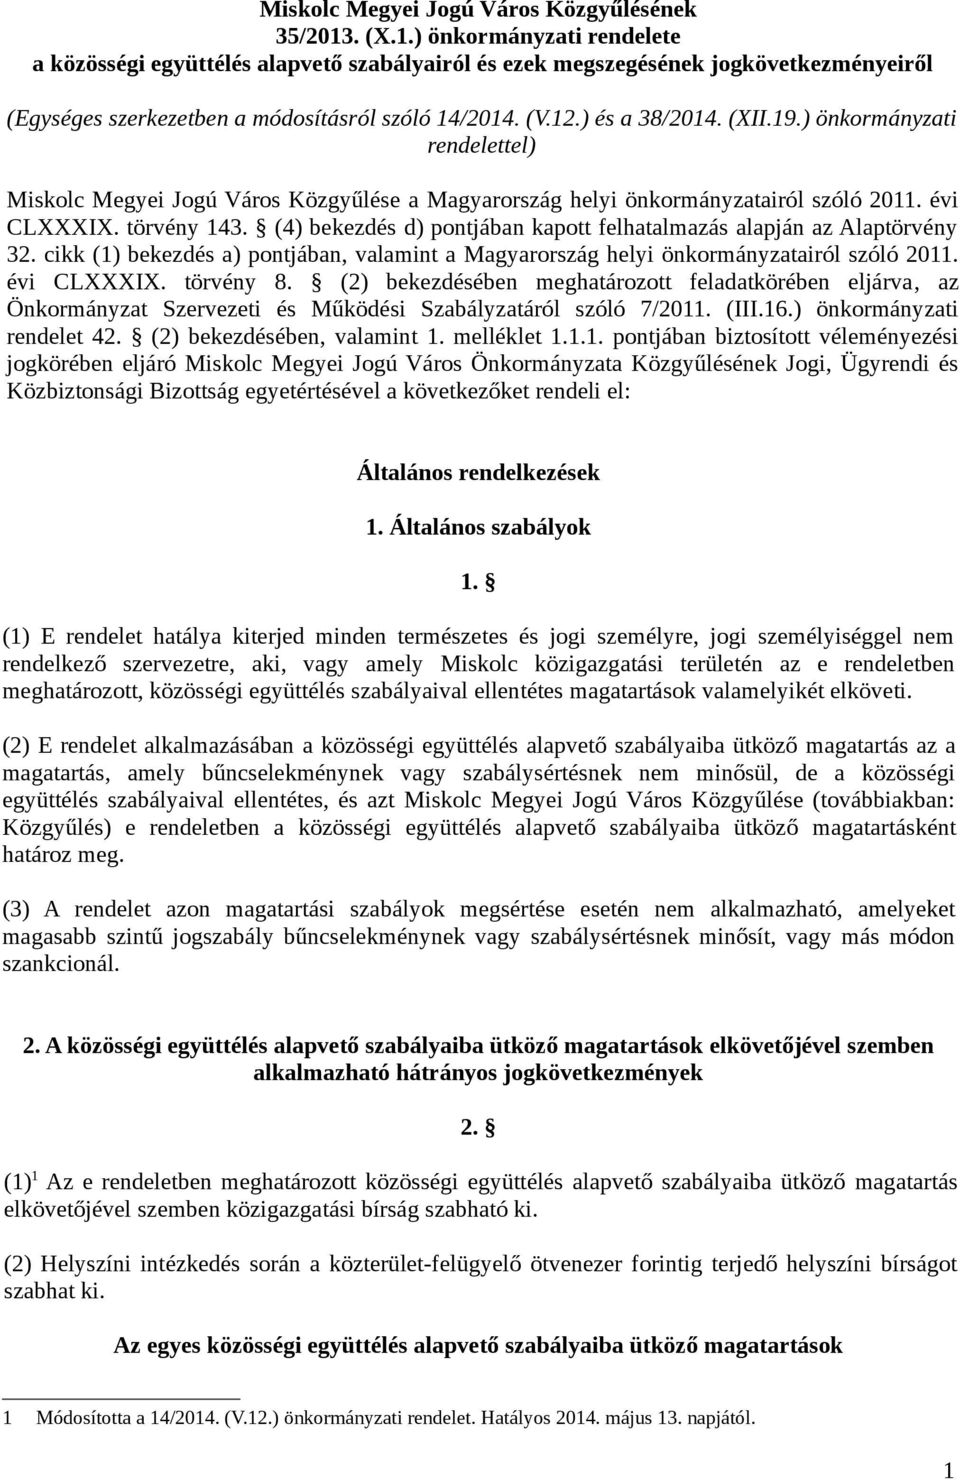 (XII.19.) önkormányzati rendelettel) Miskolc Megyei Jogú Város Közgyűlése a Magyarország helyi önkormányzatairól szóló 2011. évi CLXXXIX. törvény 143.